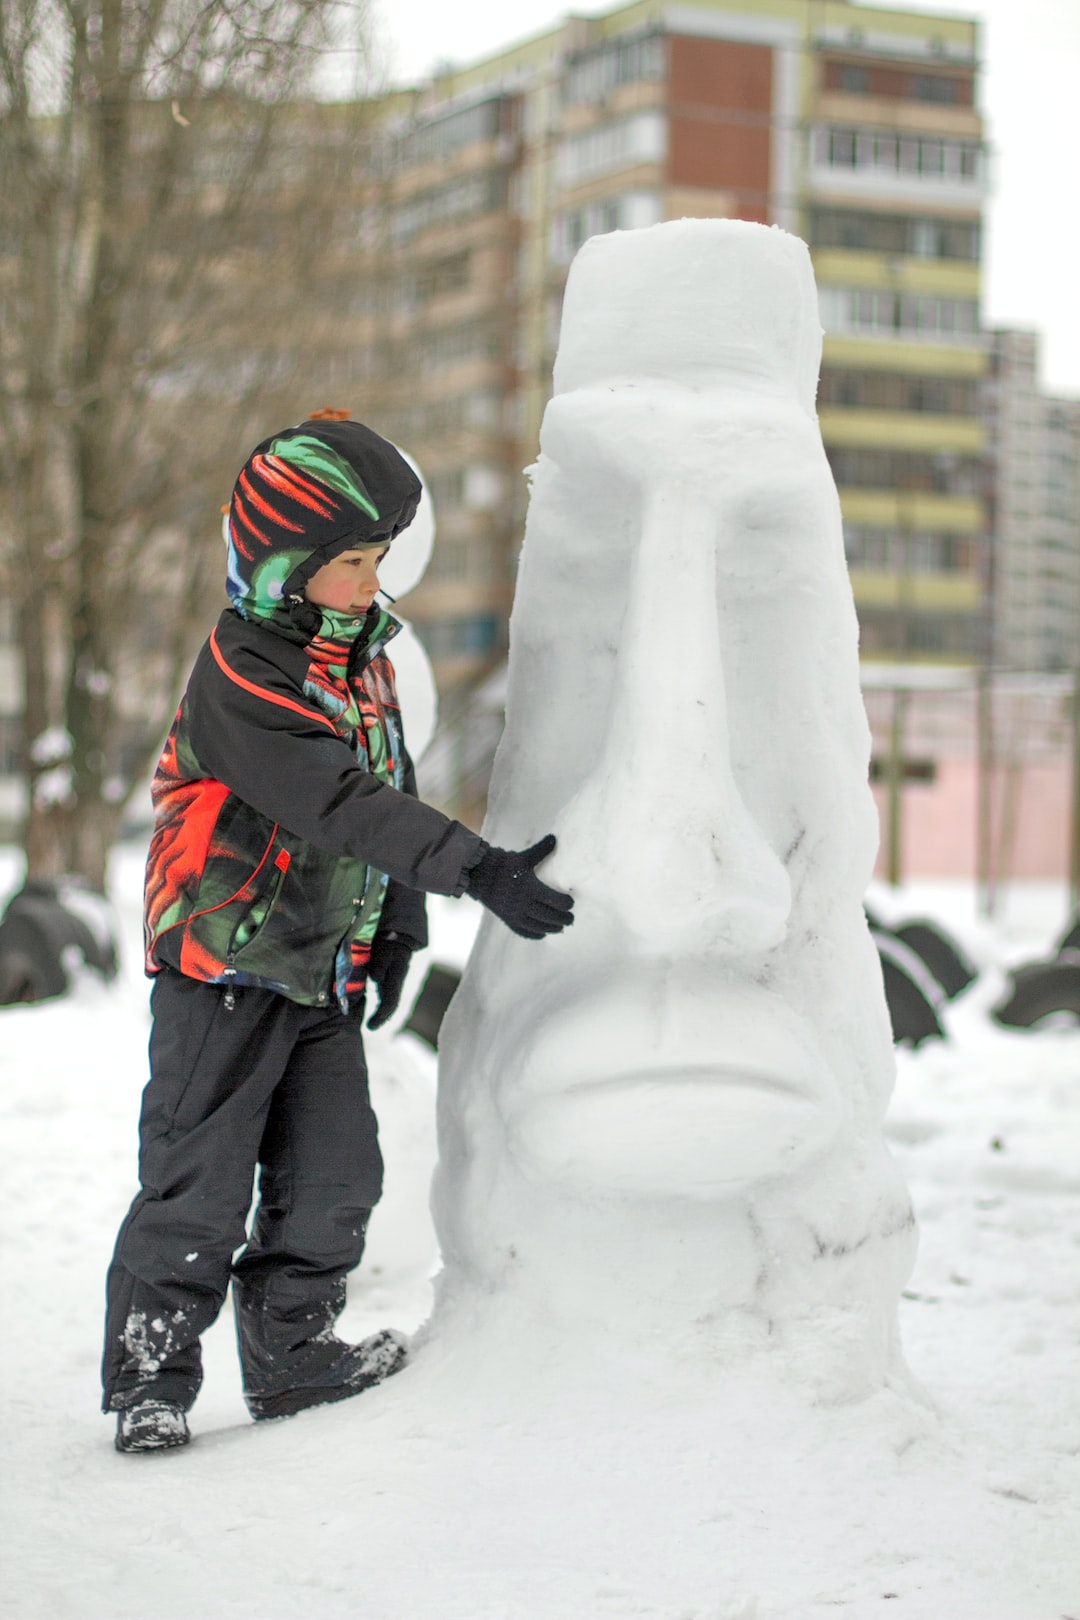 Boy making a winter snowman. An unusul snowman outdoors in snowy winter